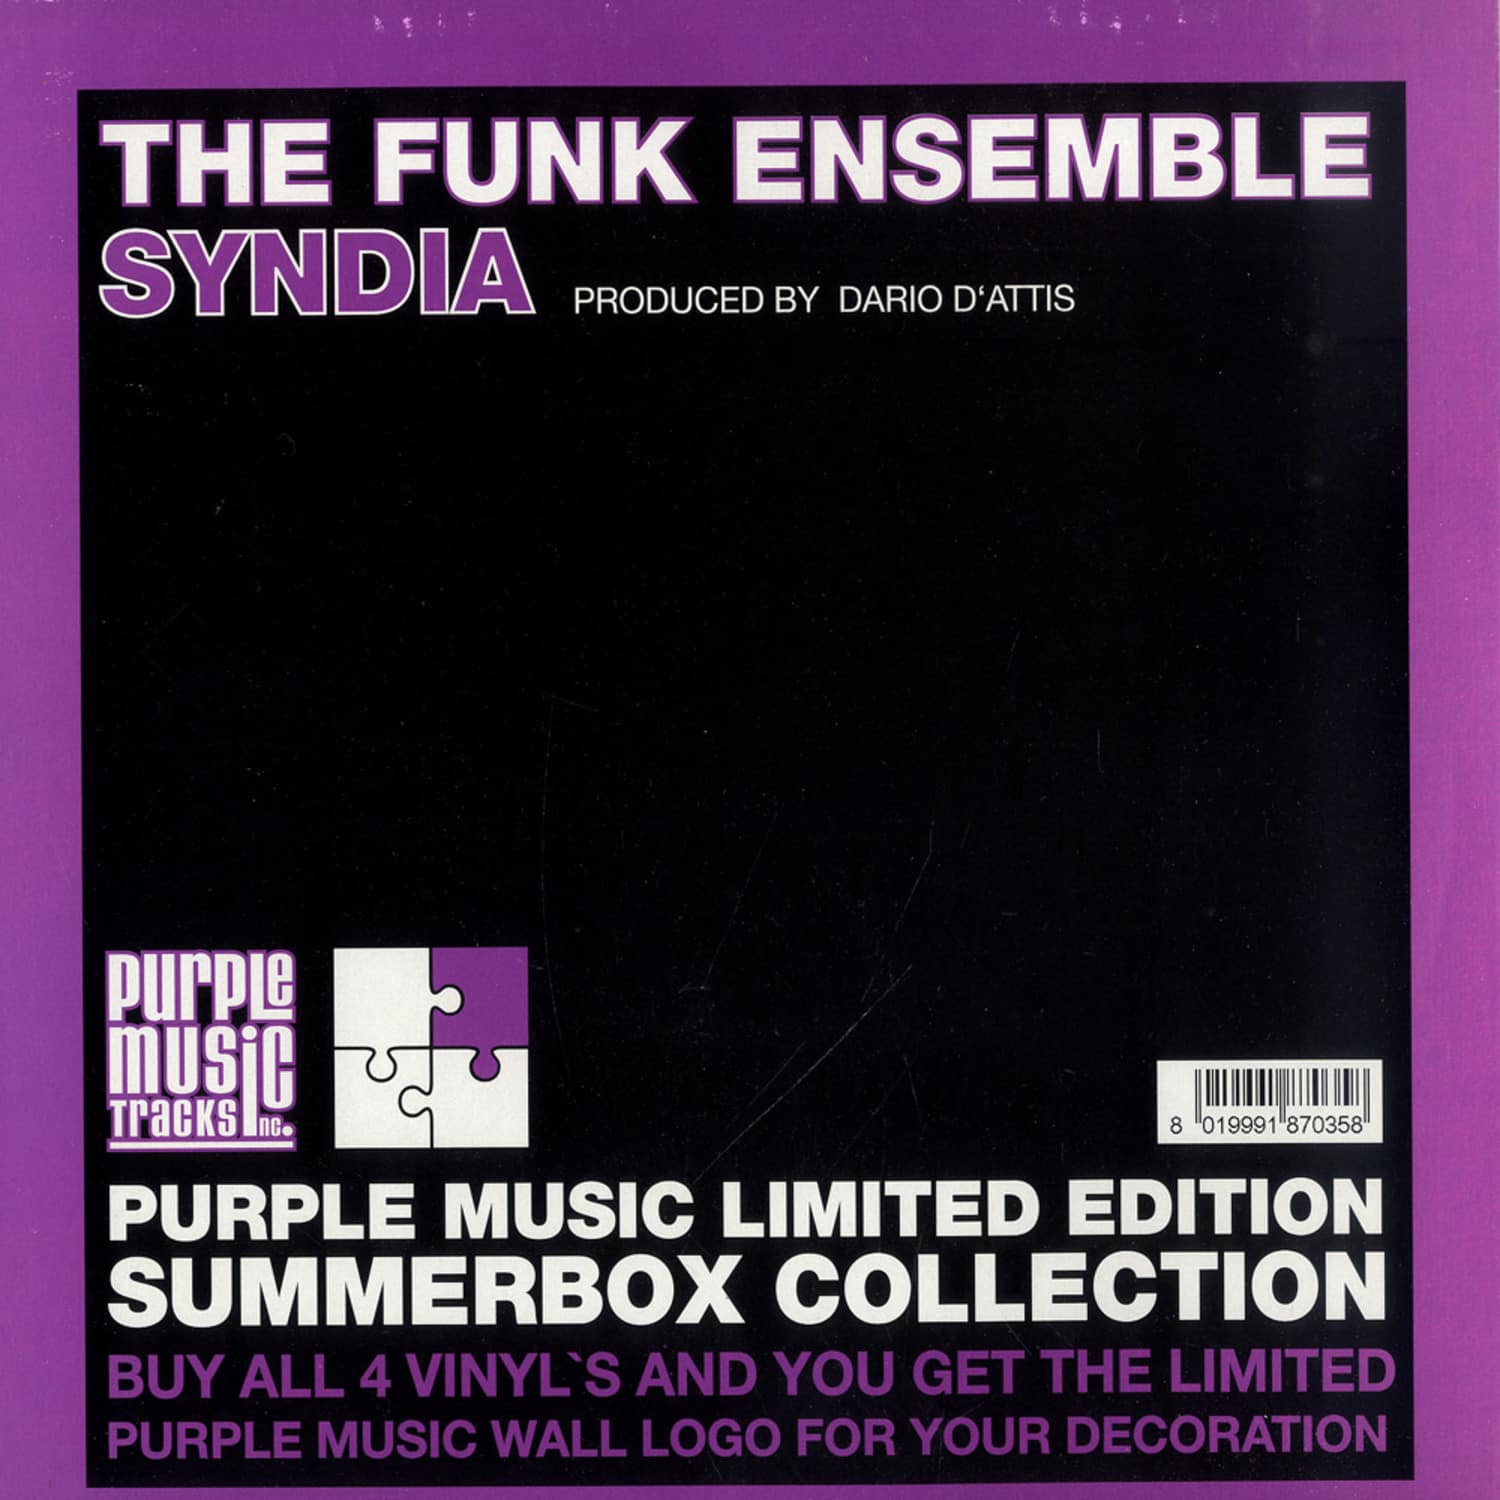 The Funk Ensemble - SYNDIA